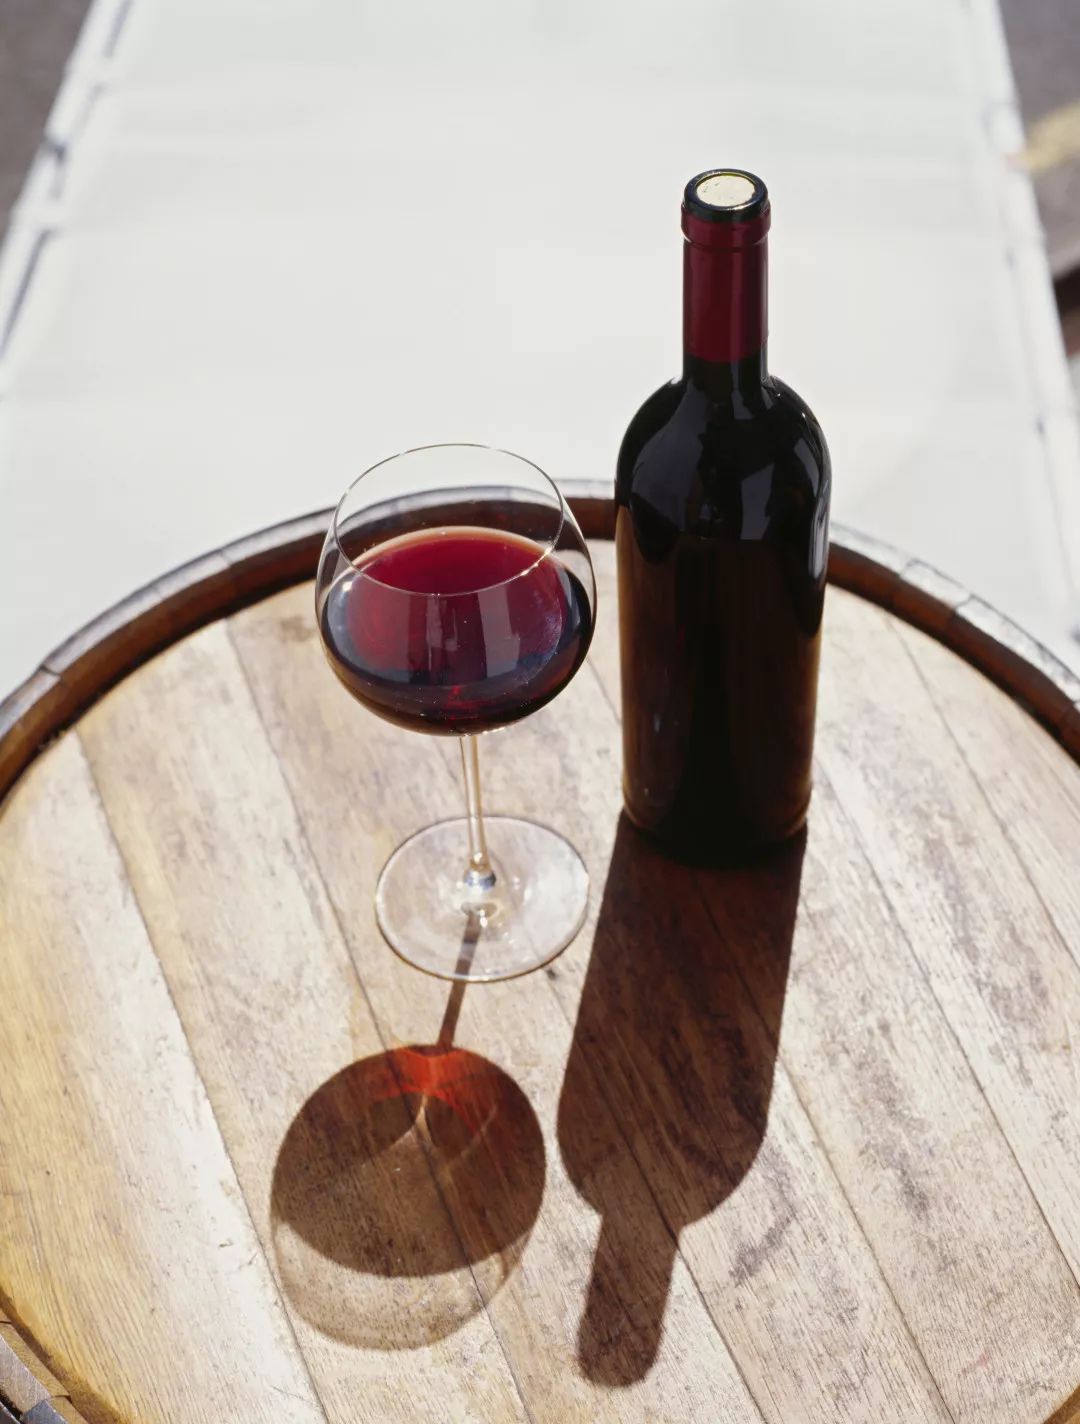 进口葡萄酒在华竞争白热化 澳葡萄酒局总经理解读市场趋势